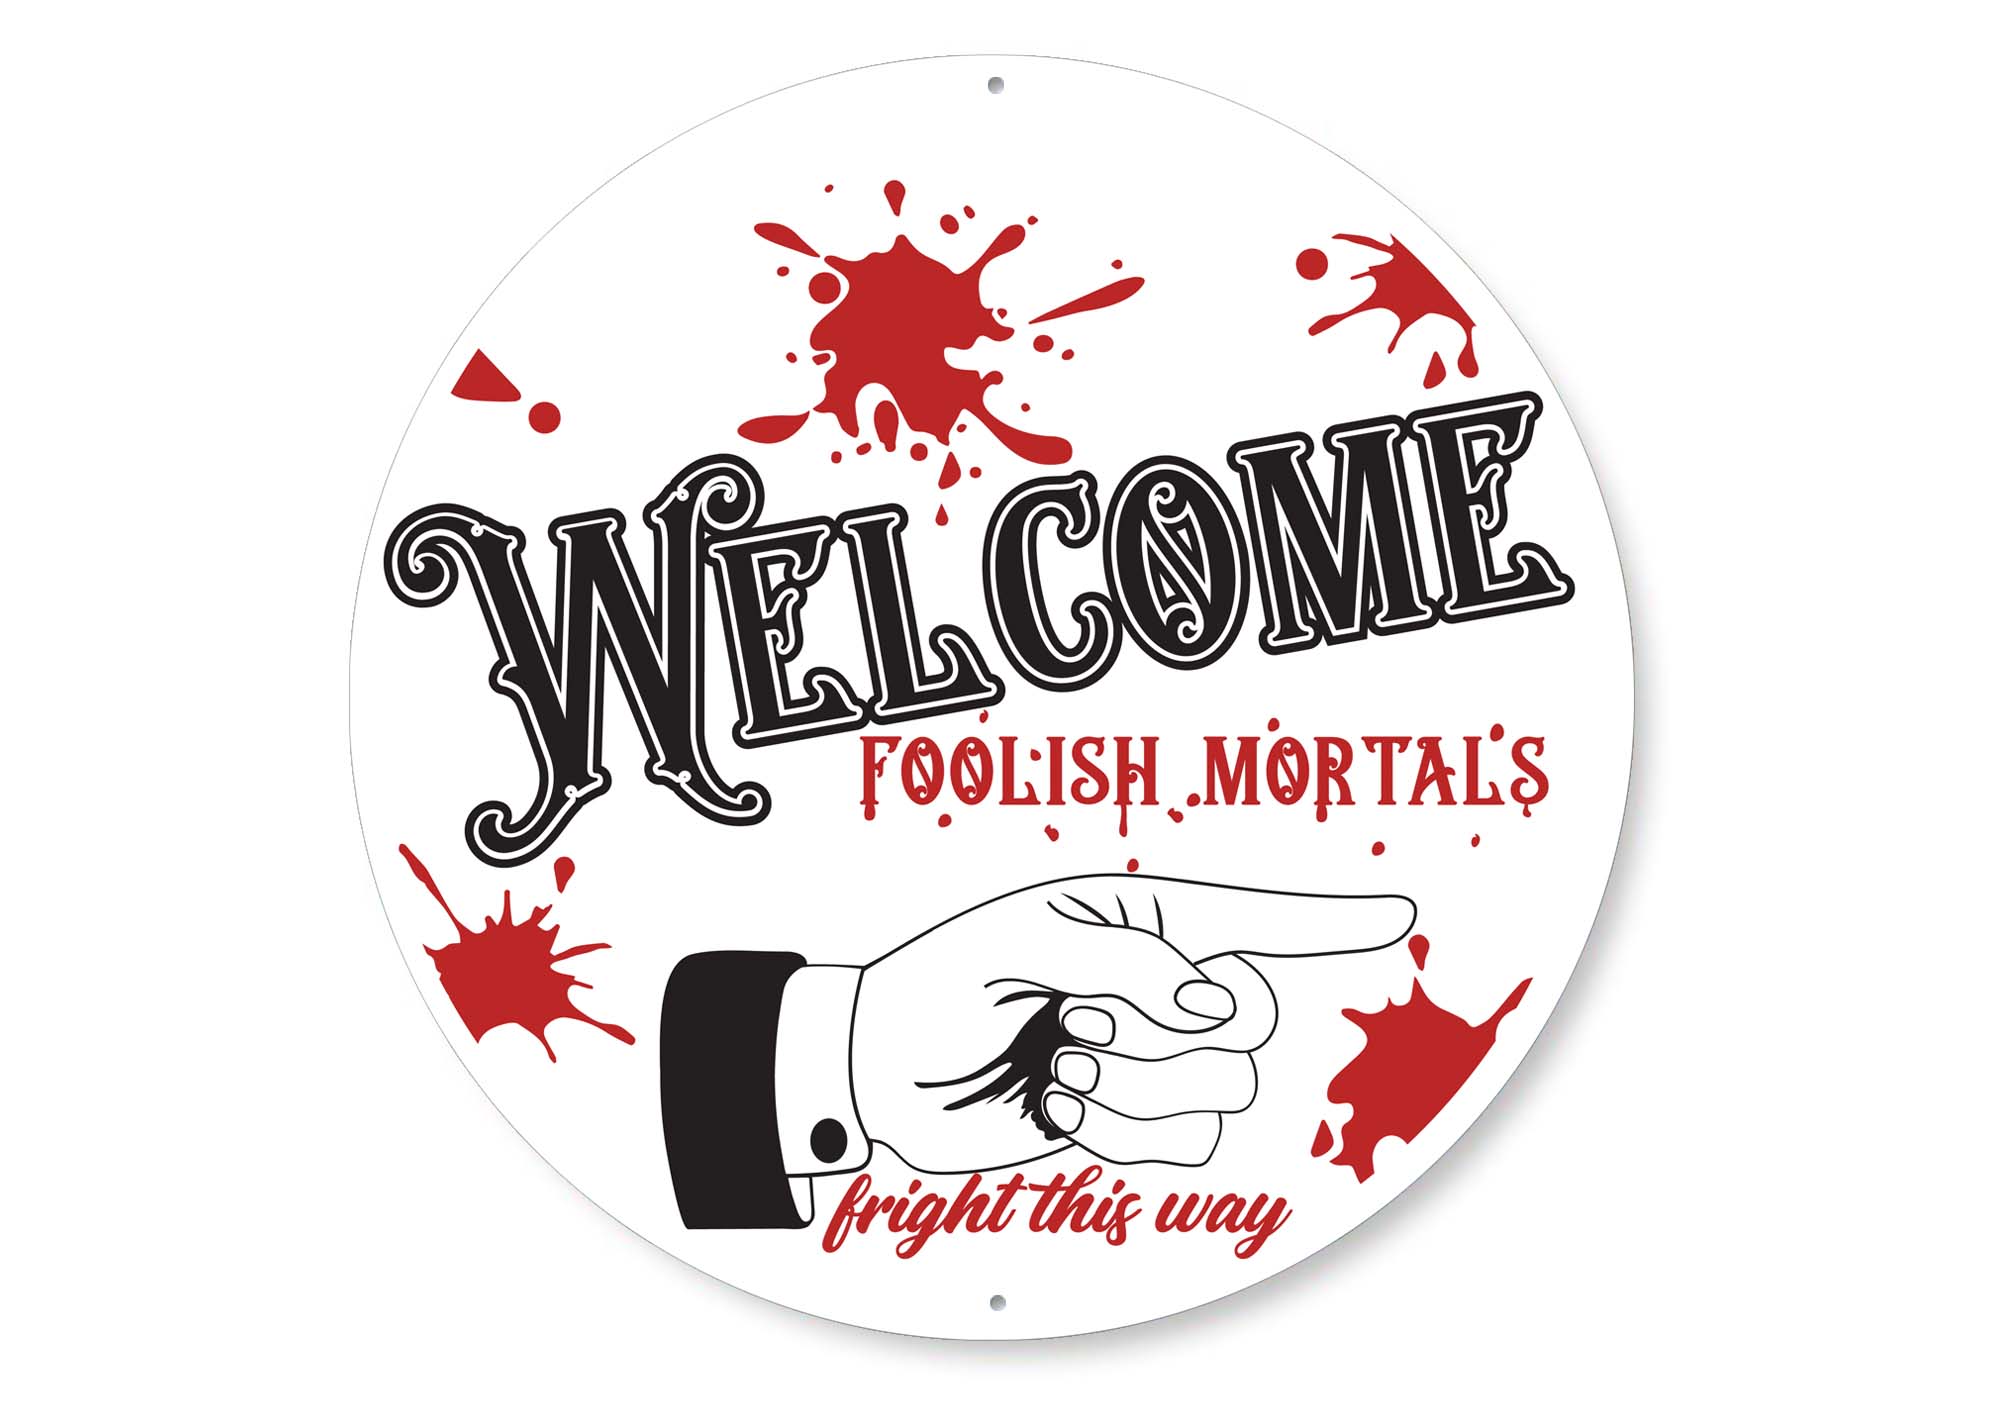 Welcome Foolish Mortals Halloween Sign